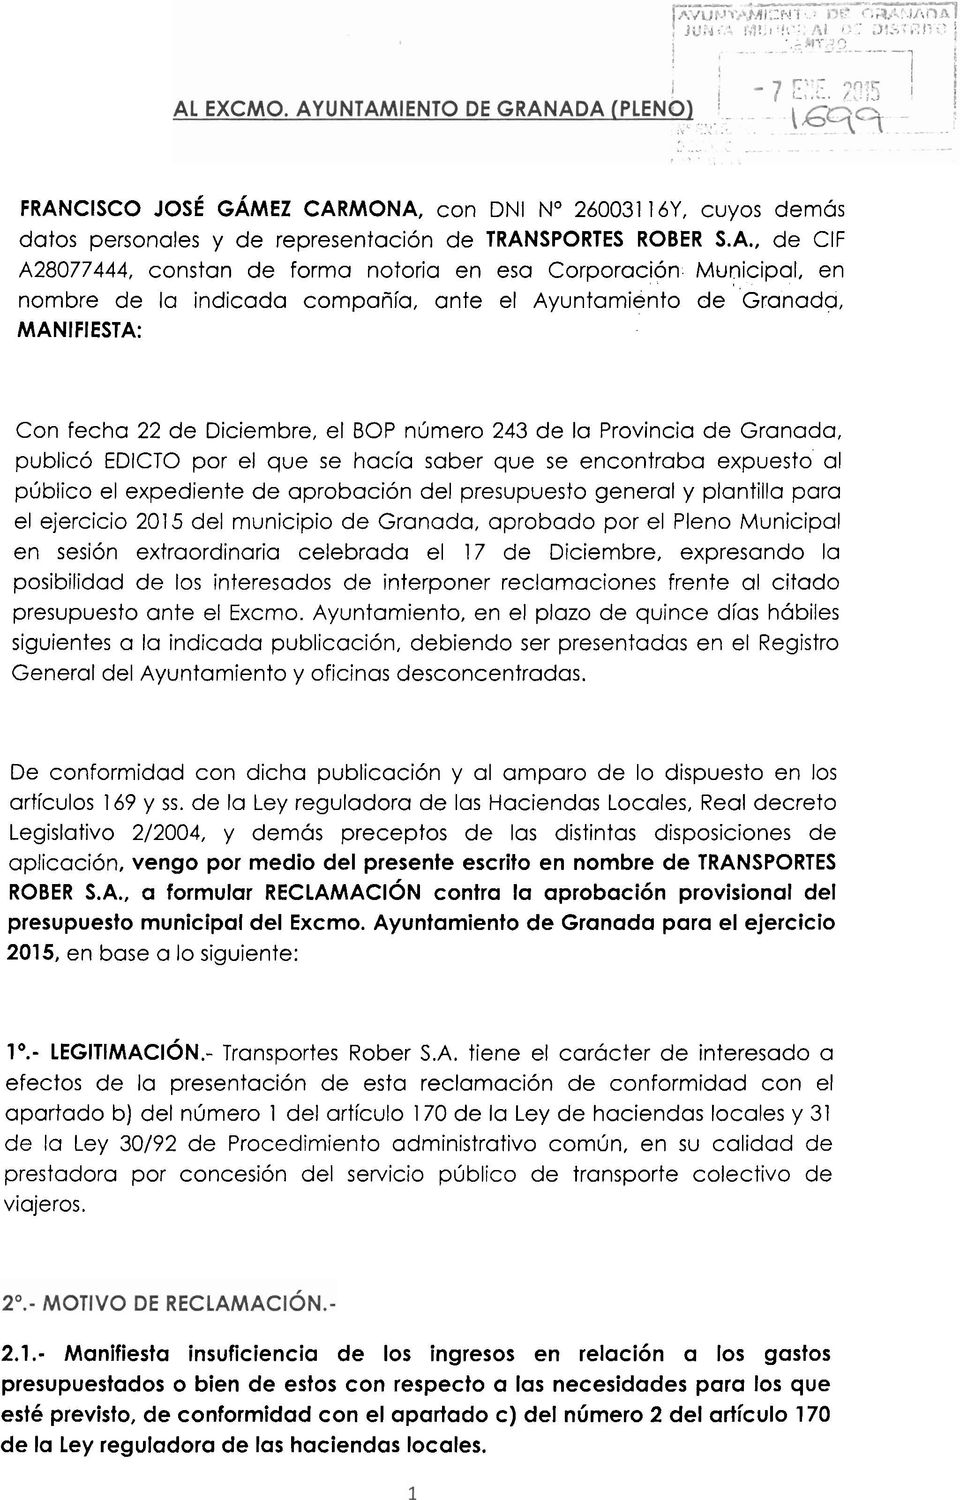 general y plantilla para el ejercicio 2015 del municipio de Granada, aprobado por el Pleno Municipal en sesión extraordinaria celebrada el 17 de Diciembre, expresando la posibilidad de los